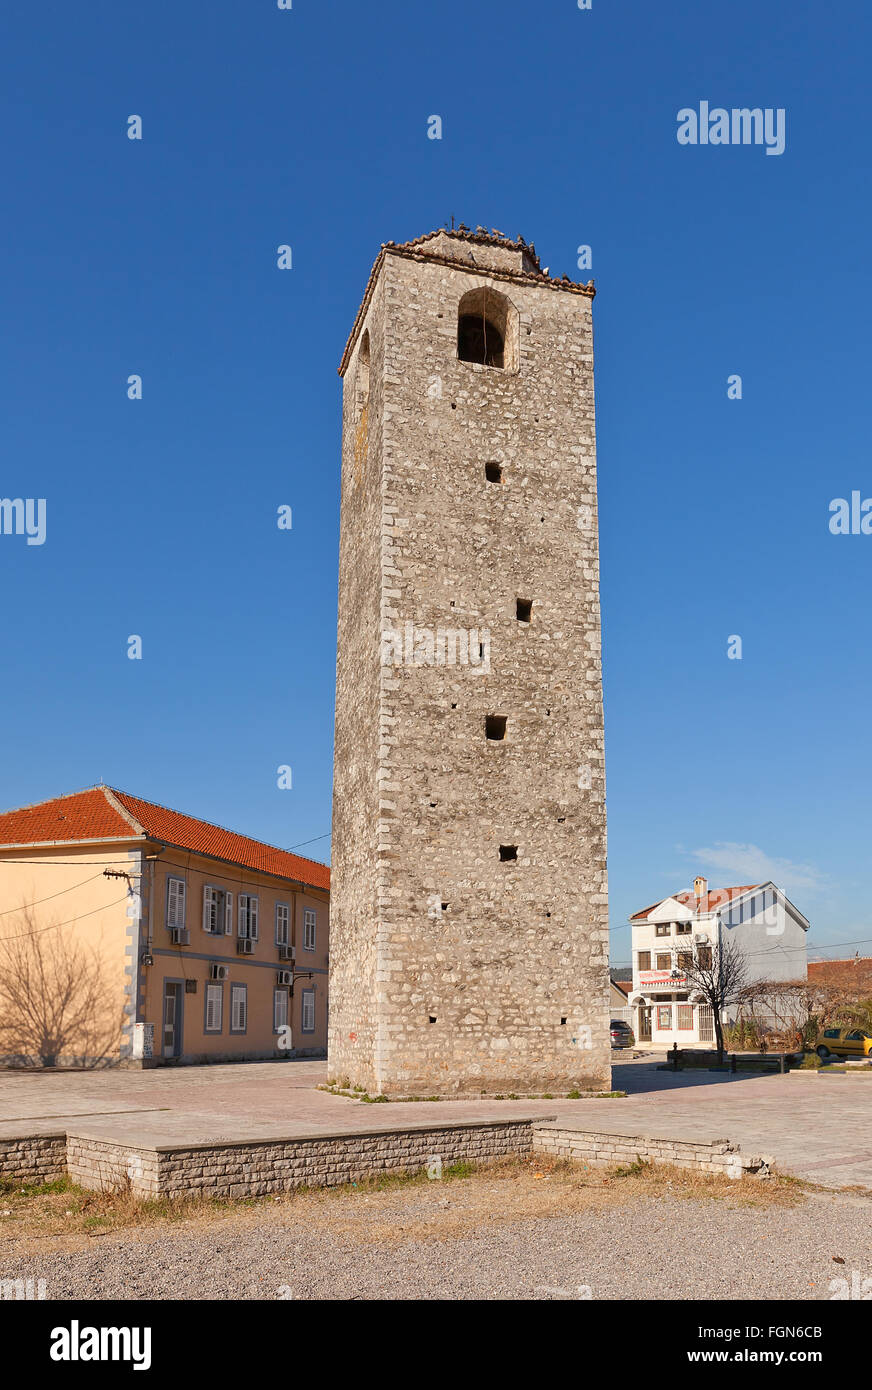 Tour de l'horloge (Sahat Kula) à Podgorica, Monténégro. La tour de 16m construit en 18ème siècle par les ottomans. L'un des plus vieux symboles de la ville Banque D'Images